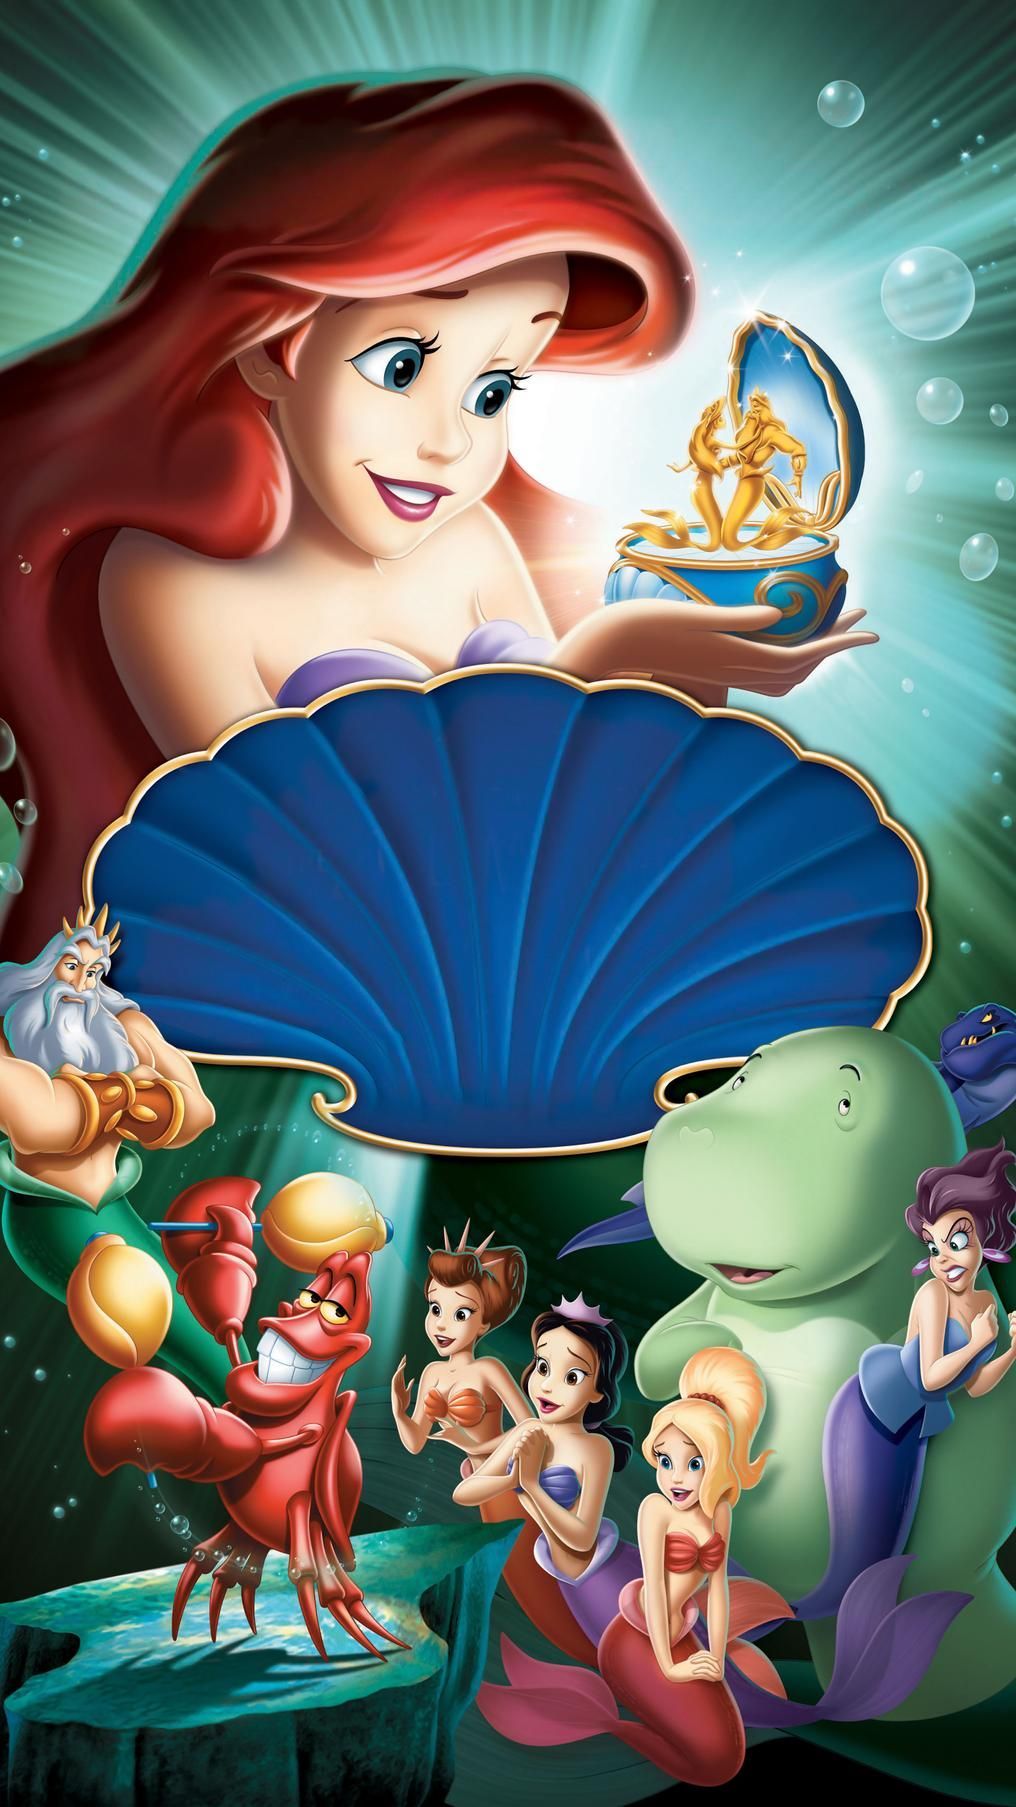 The Little Mermaid: Ariel's Beginning (2008) Phone Wallpaper. Moviemania. Invitaciones de cumpleaños de sirena, Bebé sirena, Sirenas